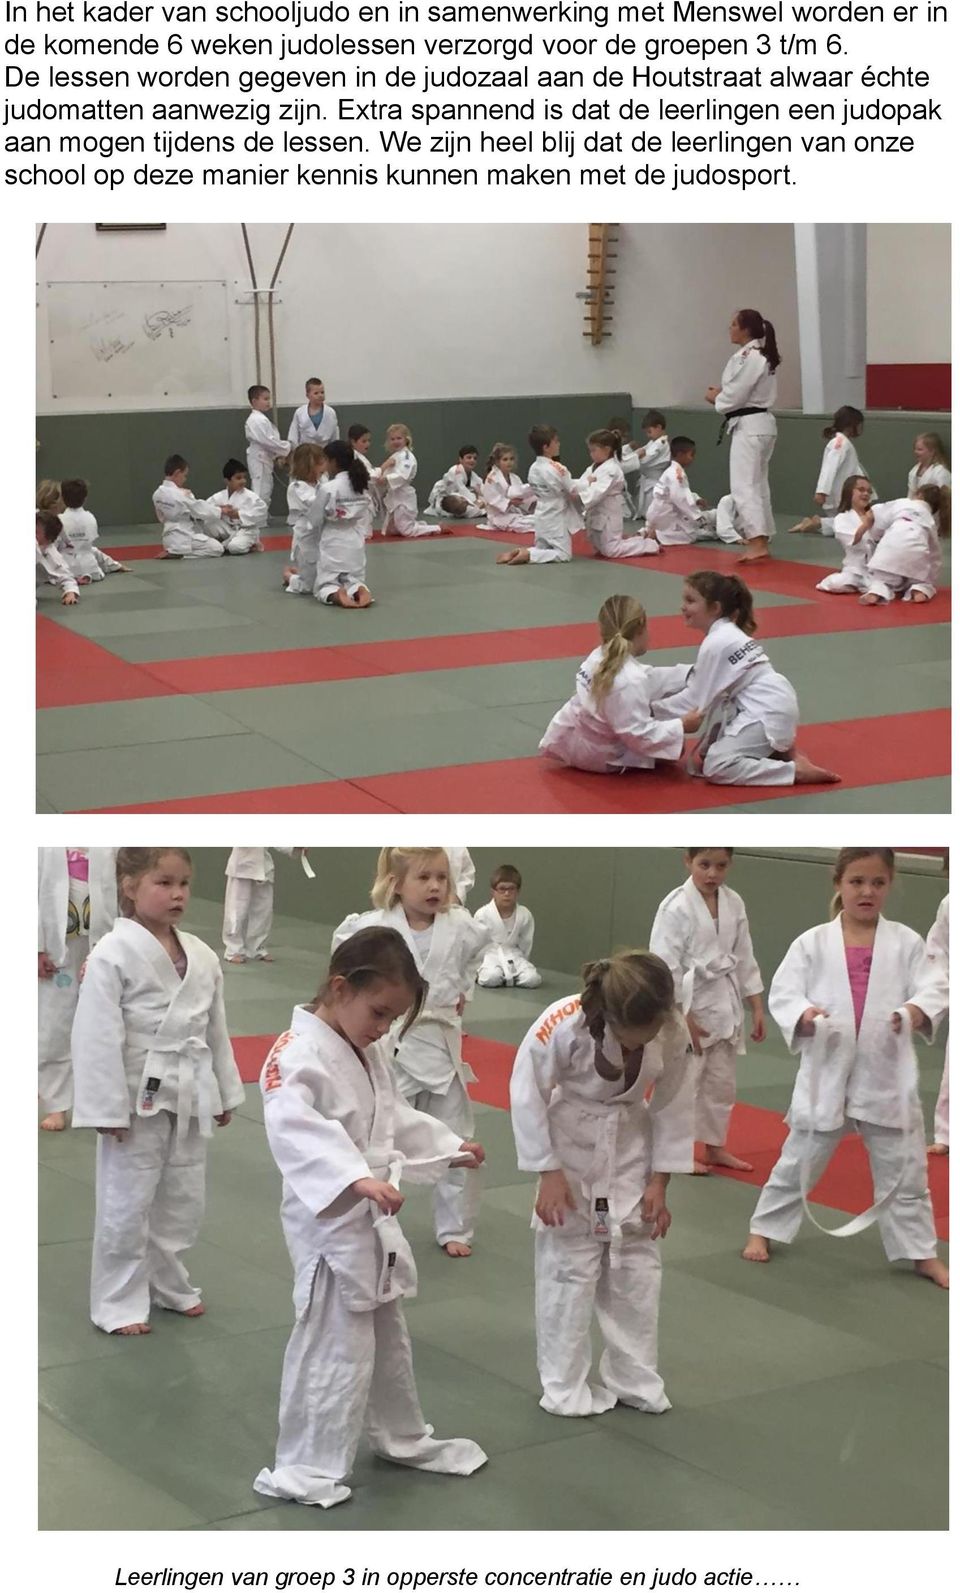 Extra spannend is dat de leerlingen een judopak aan mogen tijdens de lessen.